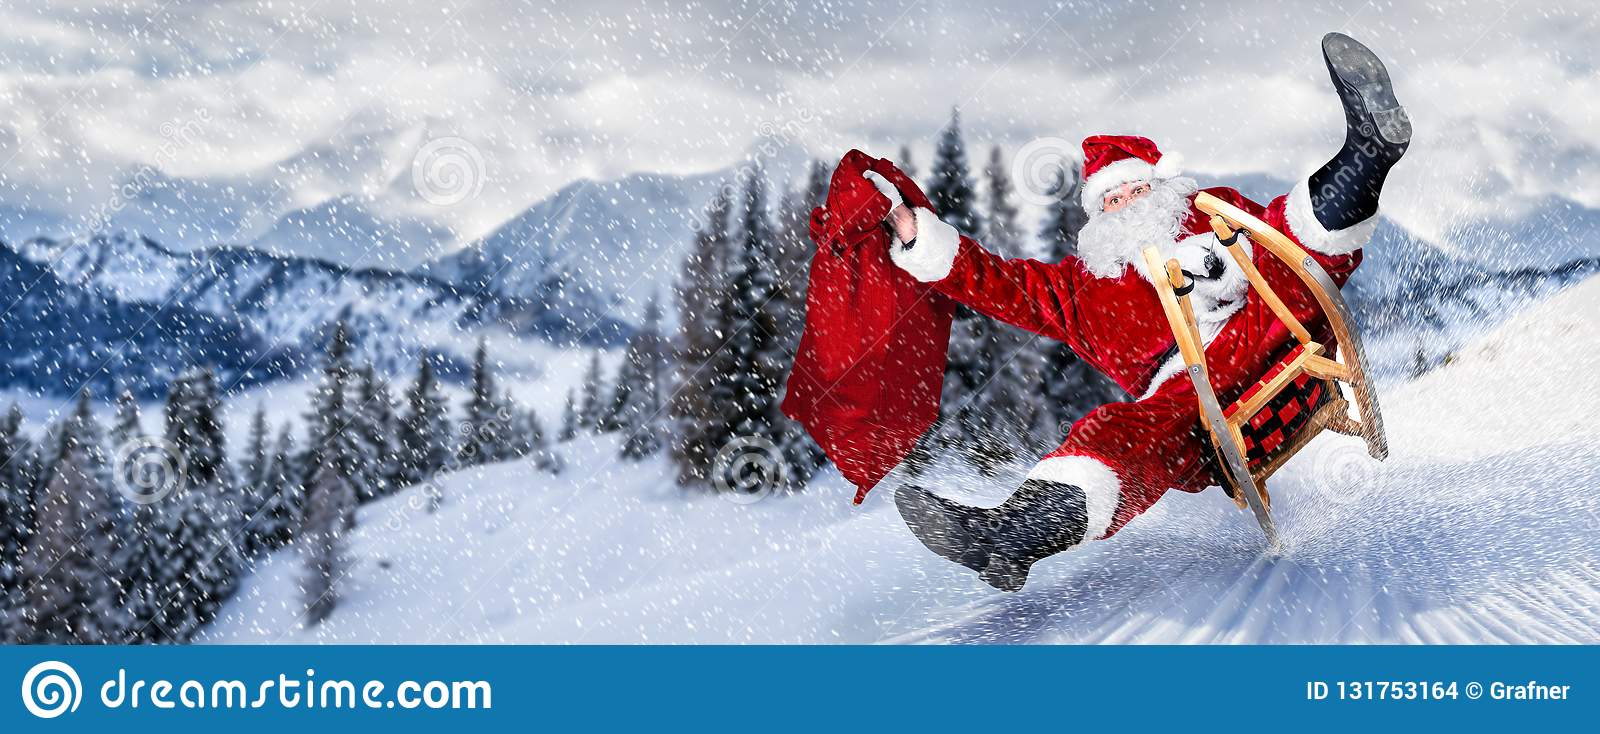 le-défunt-père-noël-pressé-sur-traîneau-de-avec-costume-blanc-rouge-traditionnel-et-grand-sac-cadeau-devant-l-hiver-neige-131753164.jpg